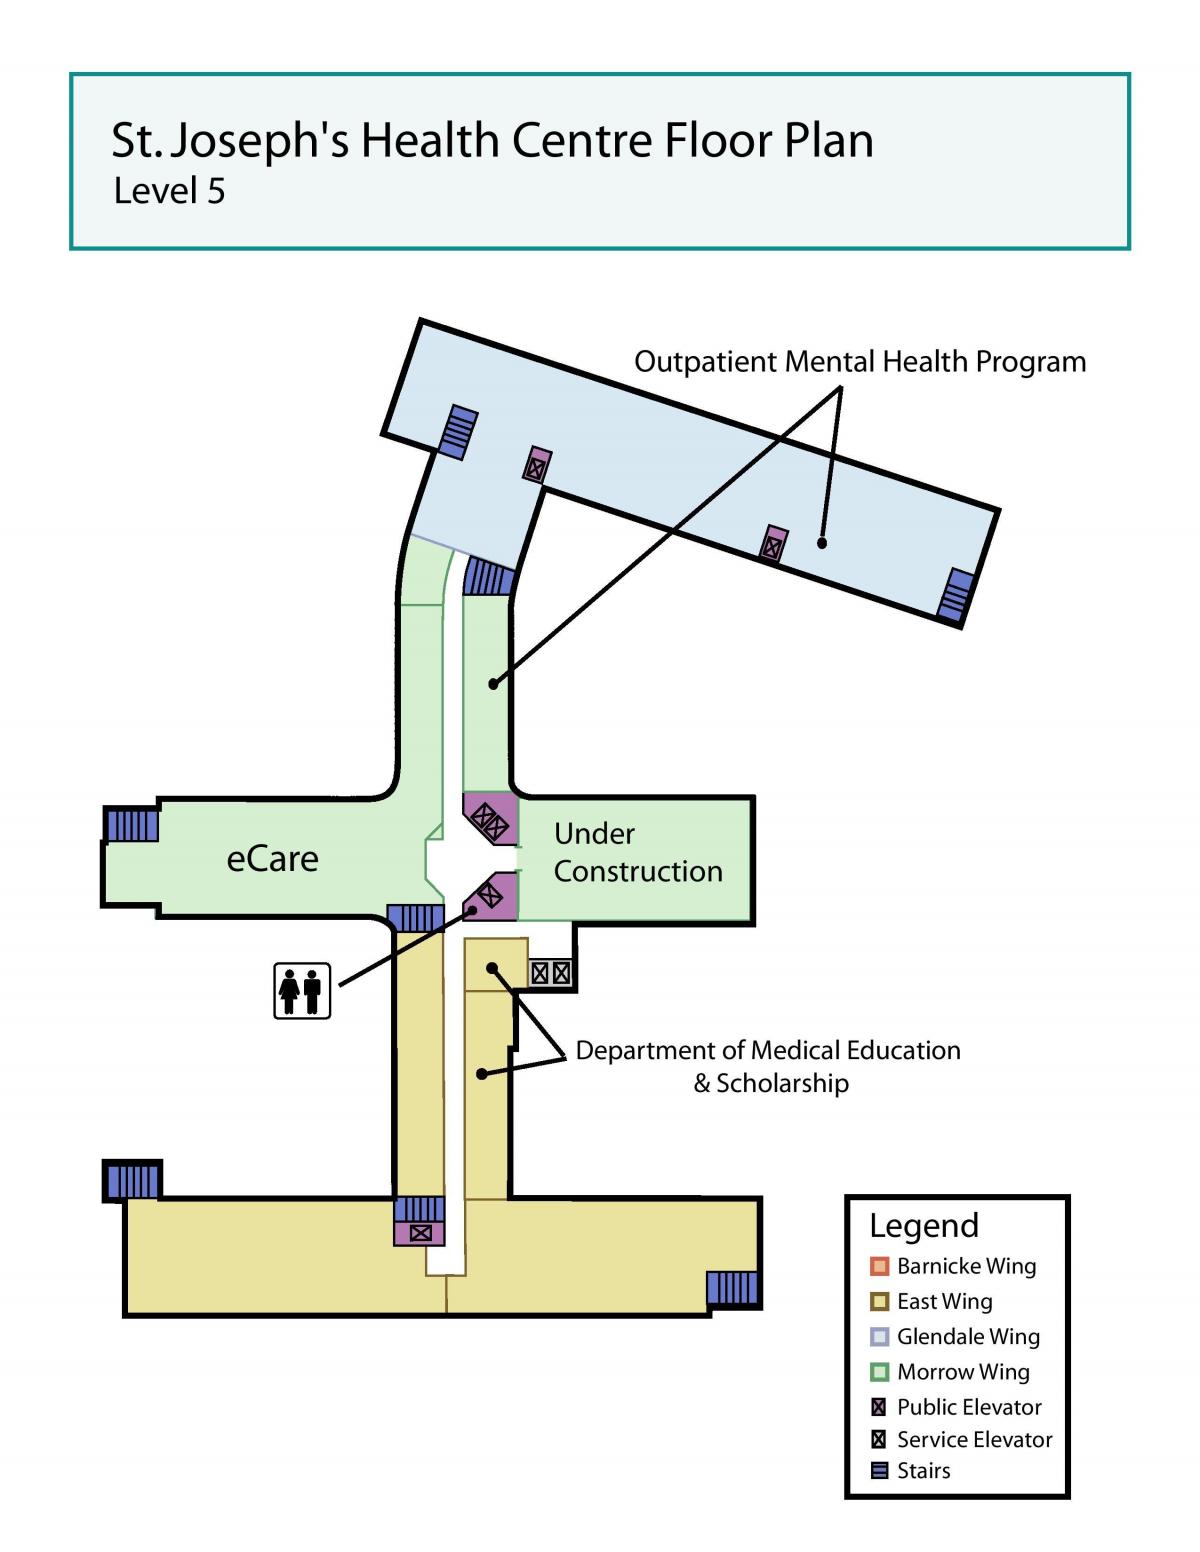 Harta e Shën Jozefit në qendrën Shëndetësore të Torontos nivelin e 5-të